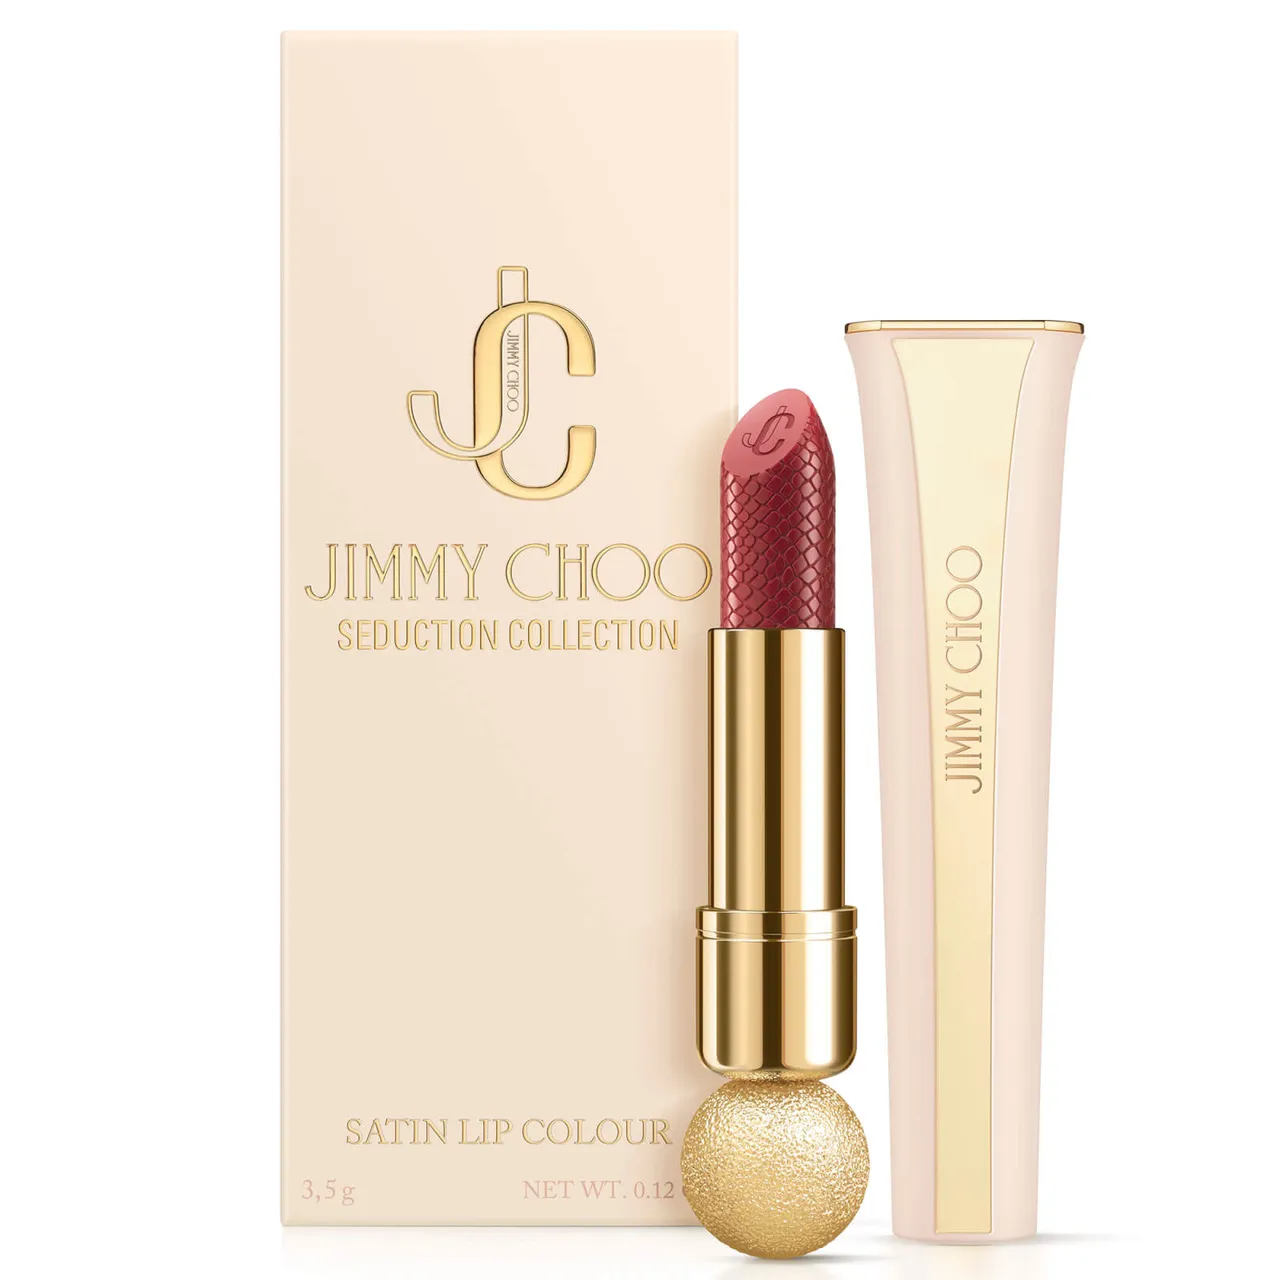 Jimmy Choo Seduction Satin Lip Colour 3.5g (Various Shades) - Daring Pink